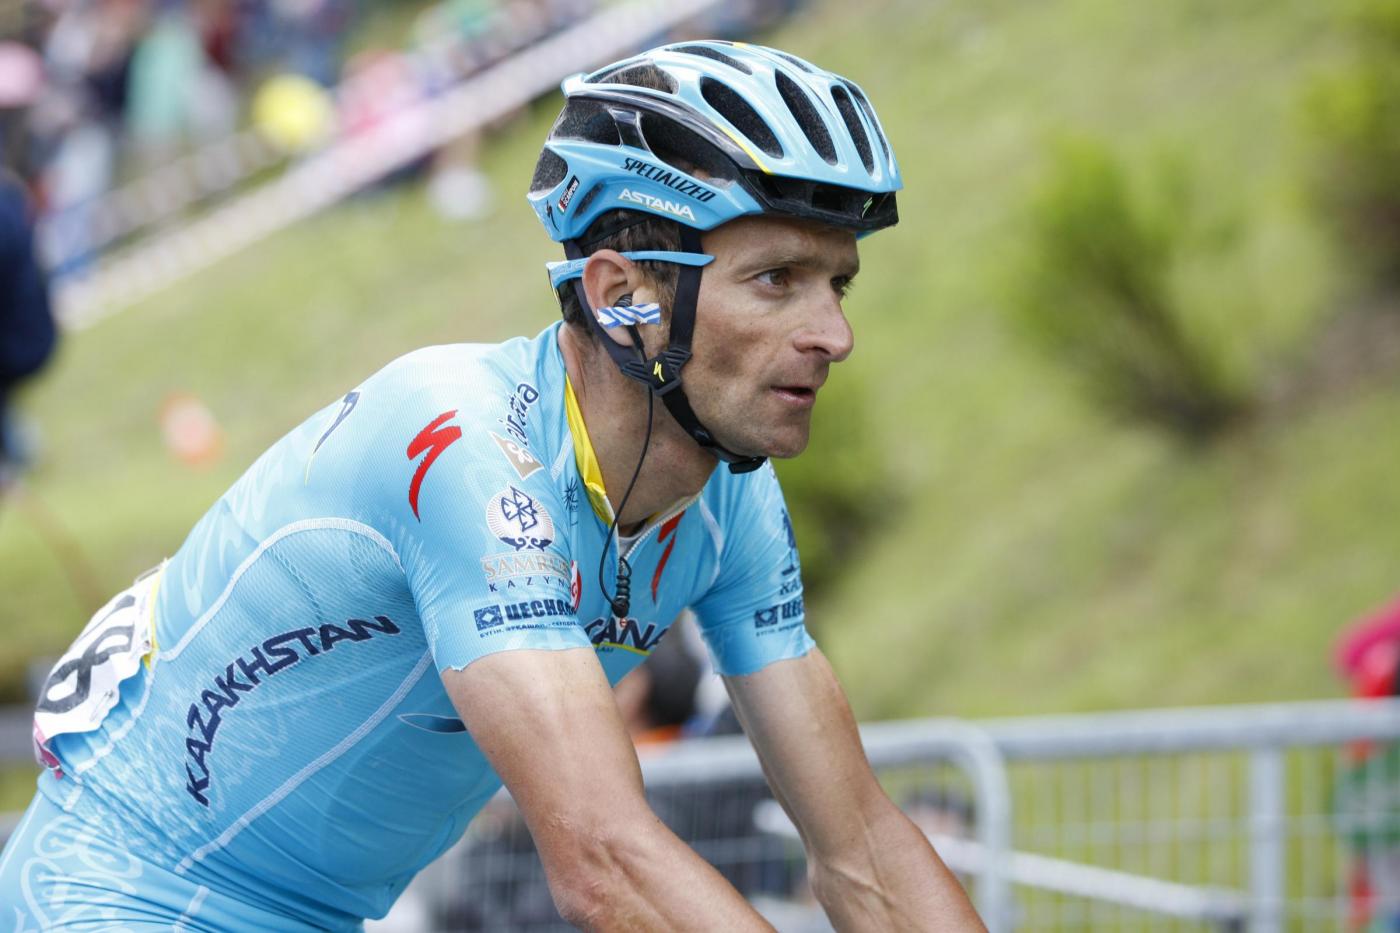 Morto Michele Scarponi, lutto nel ciclismo: aveva vinto il Giro d’Italia 2011